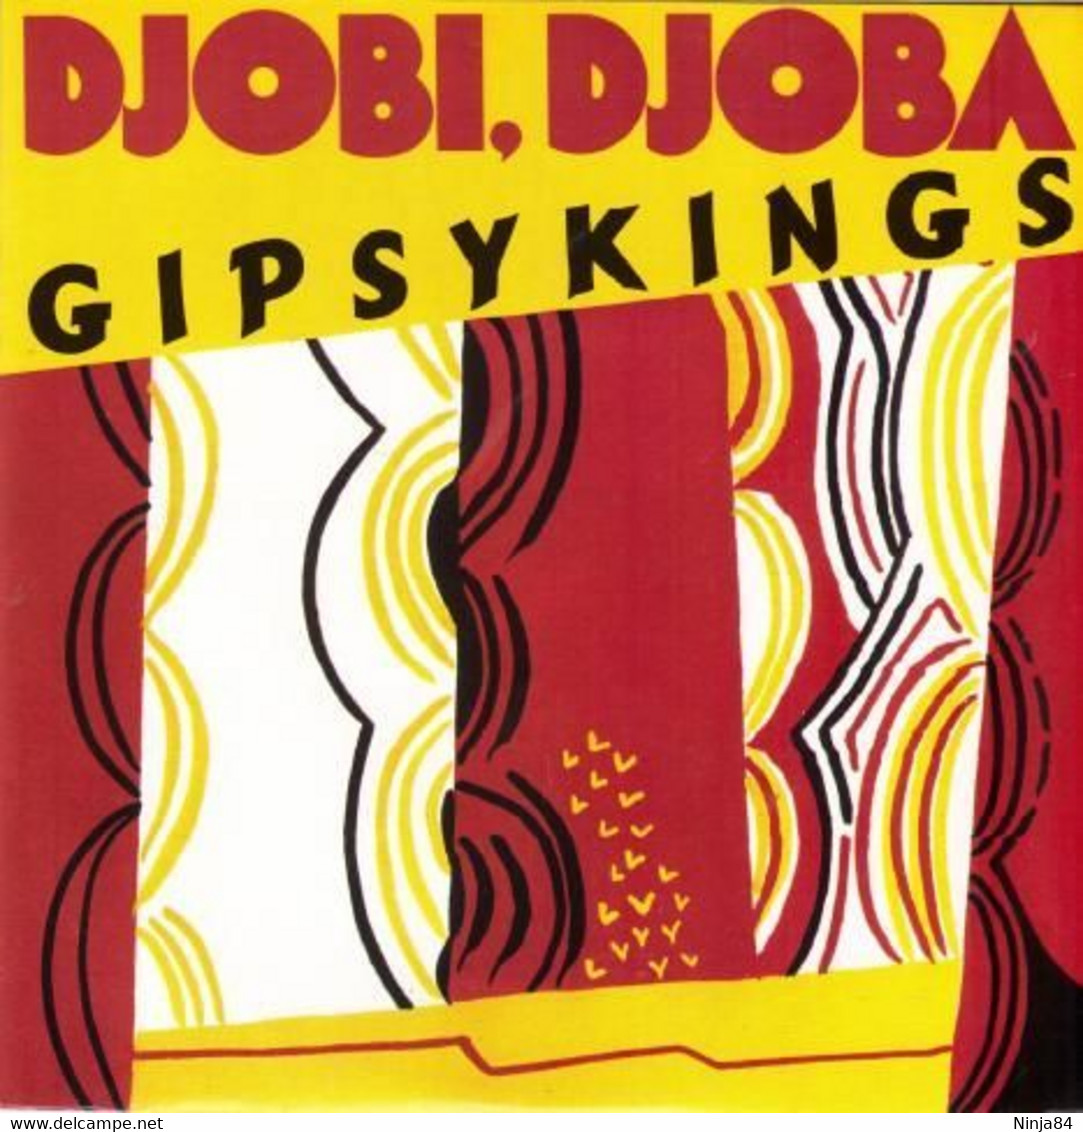 SP 45 RPM (7")  Gipsy Kings  "  Djobi, Djoba  " - Sonstige - Spanische Musik